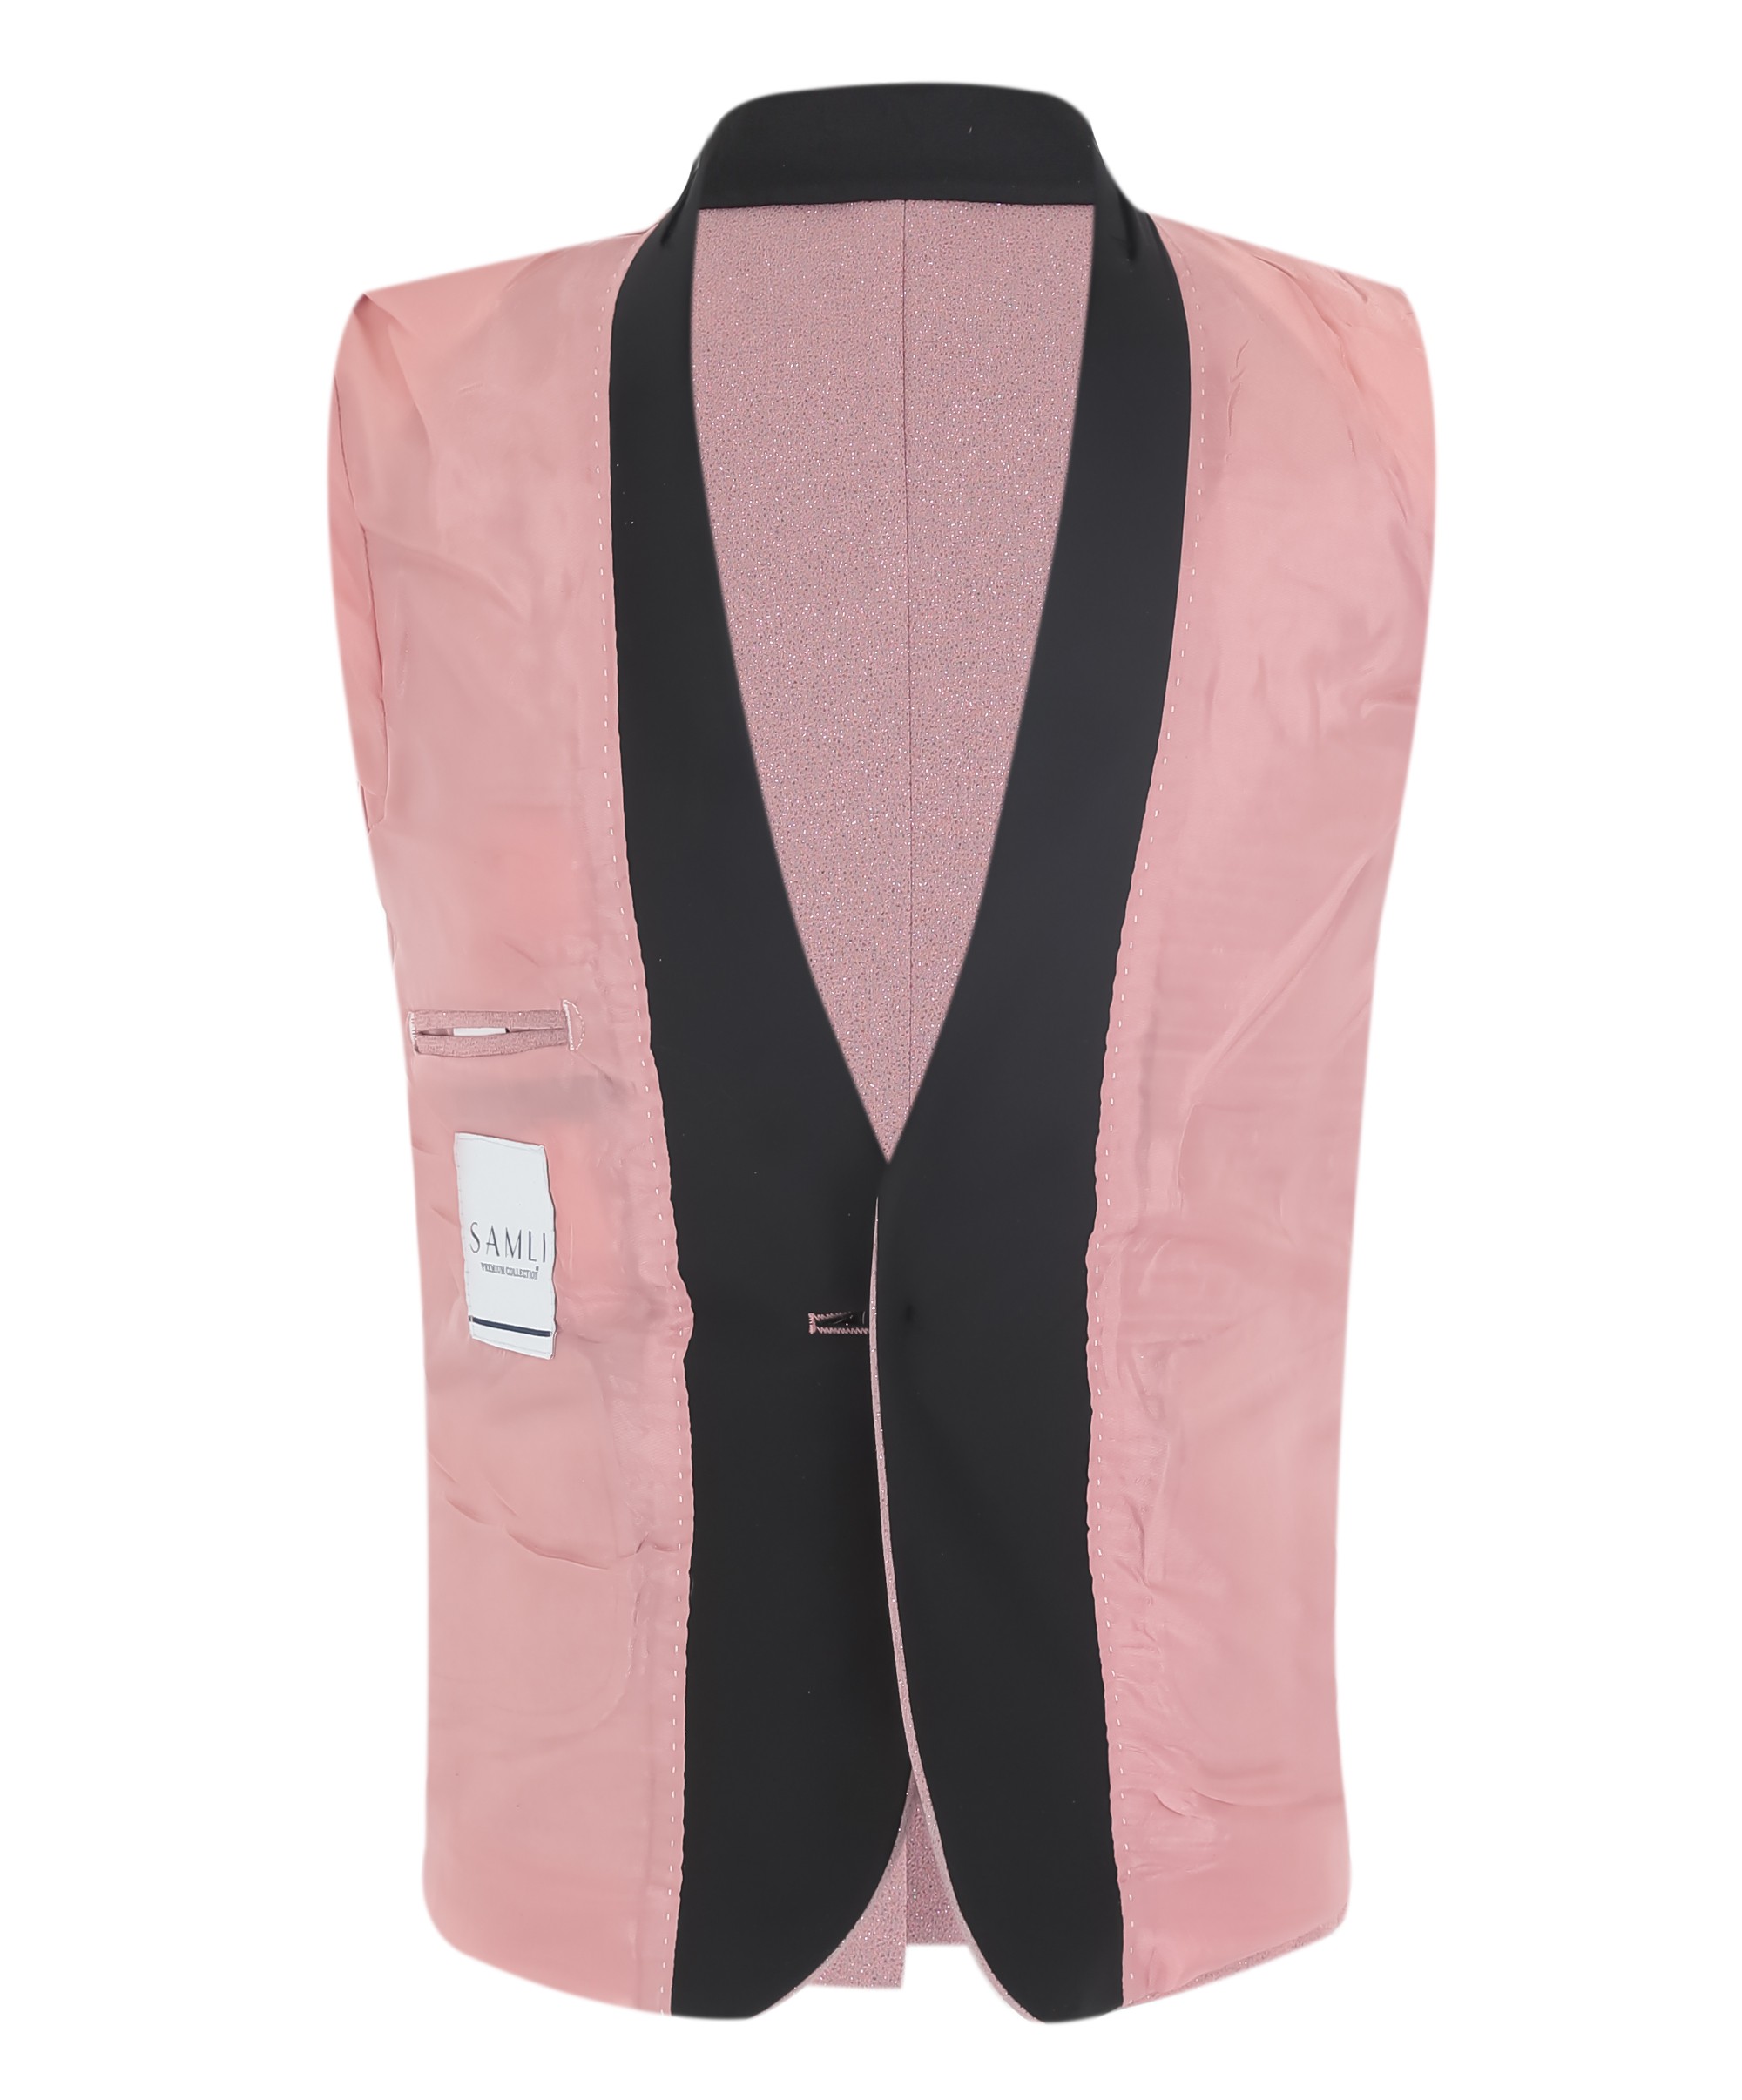 Slim Fit Glitzer-Smoking-Hochzeitsanzug für Jungen, 5-teiliges Komplettset - Erröten rosa